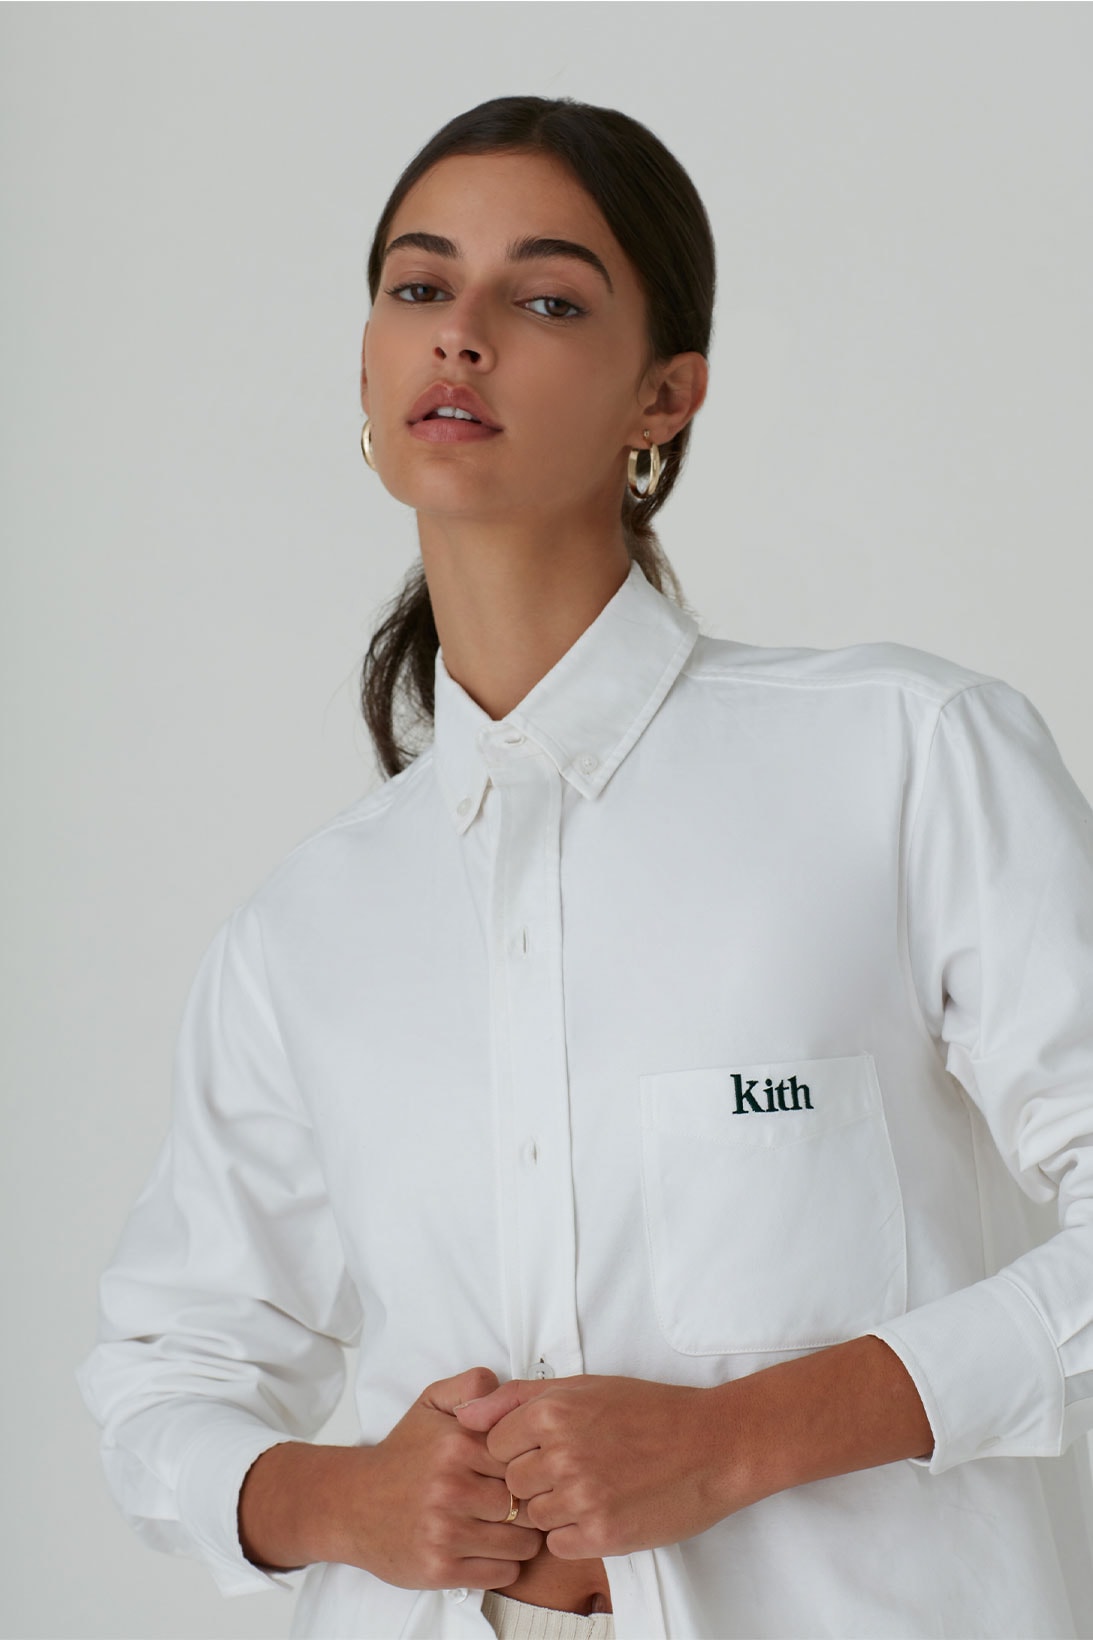 kith women spring 2021 collection logo shirt